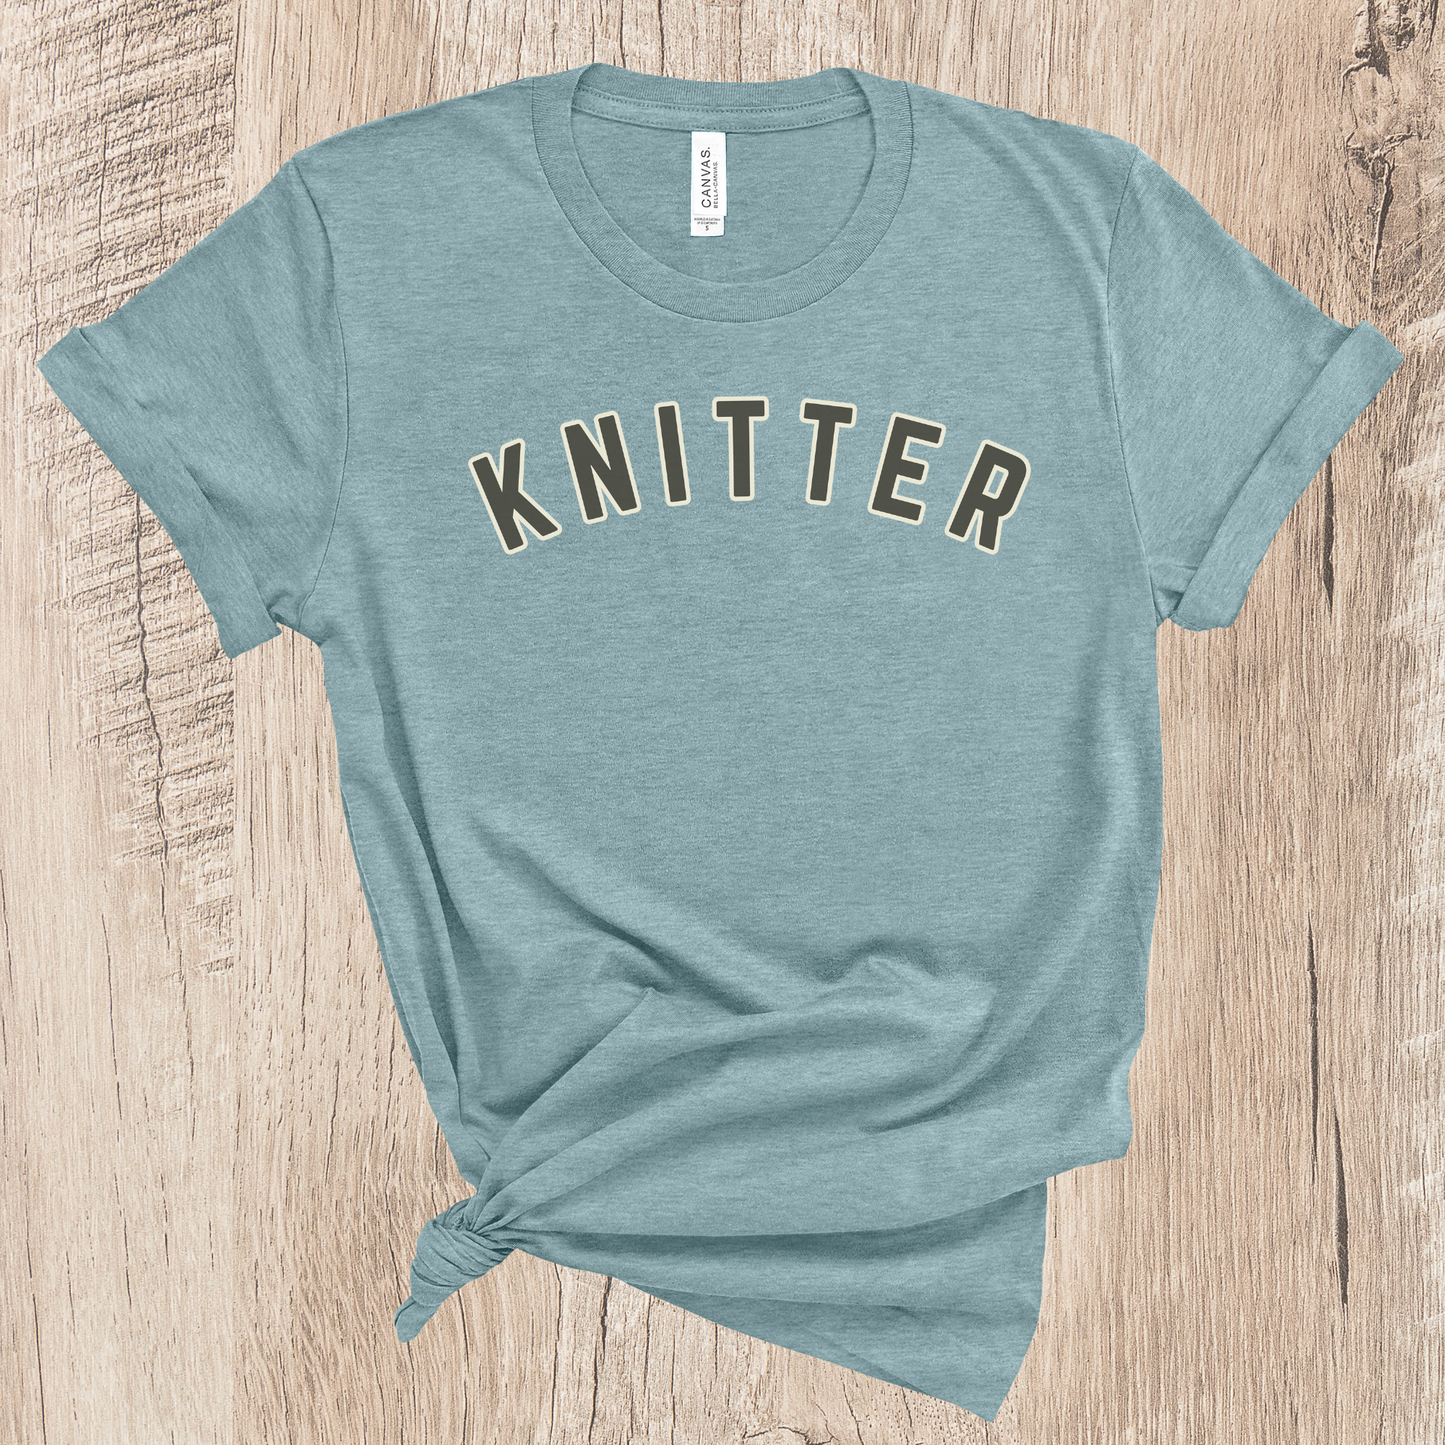 KNITTER — Varsity T-shirt